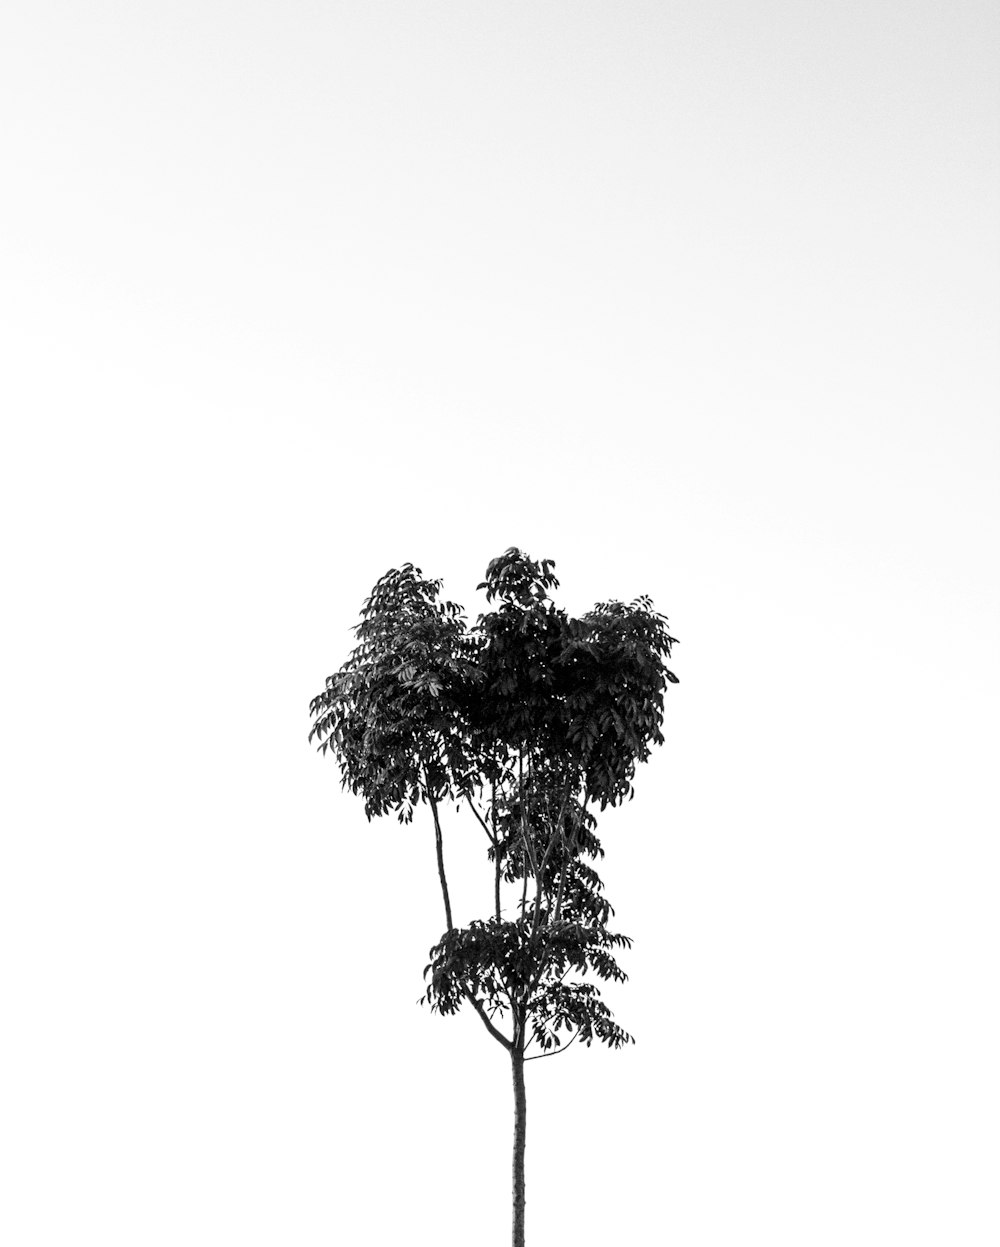 foto in scala di grigi dell'albero